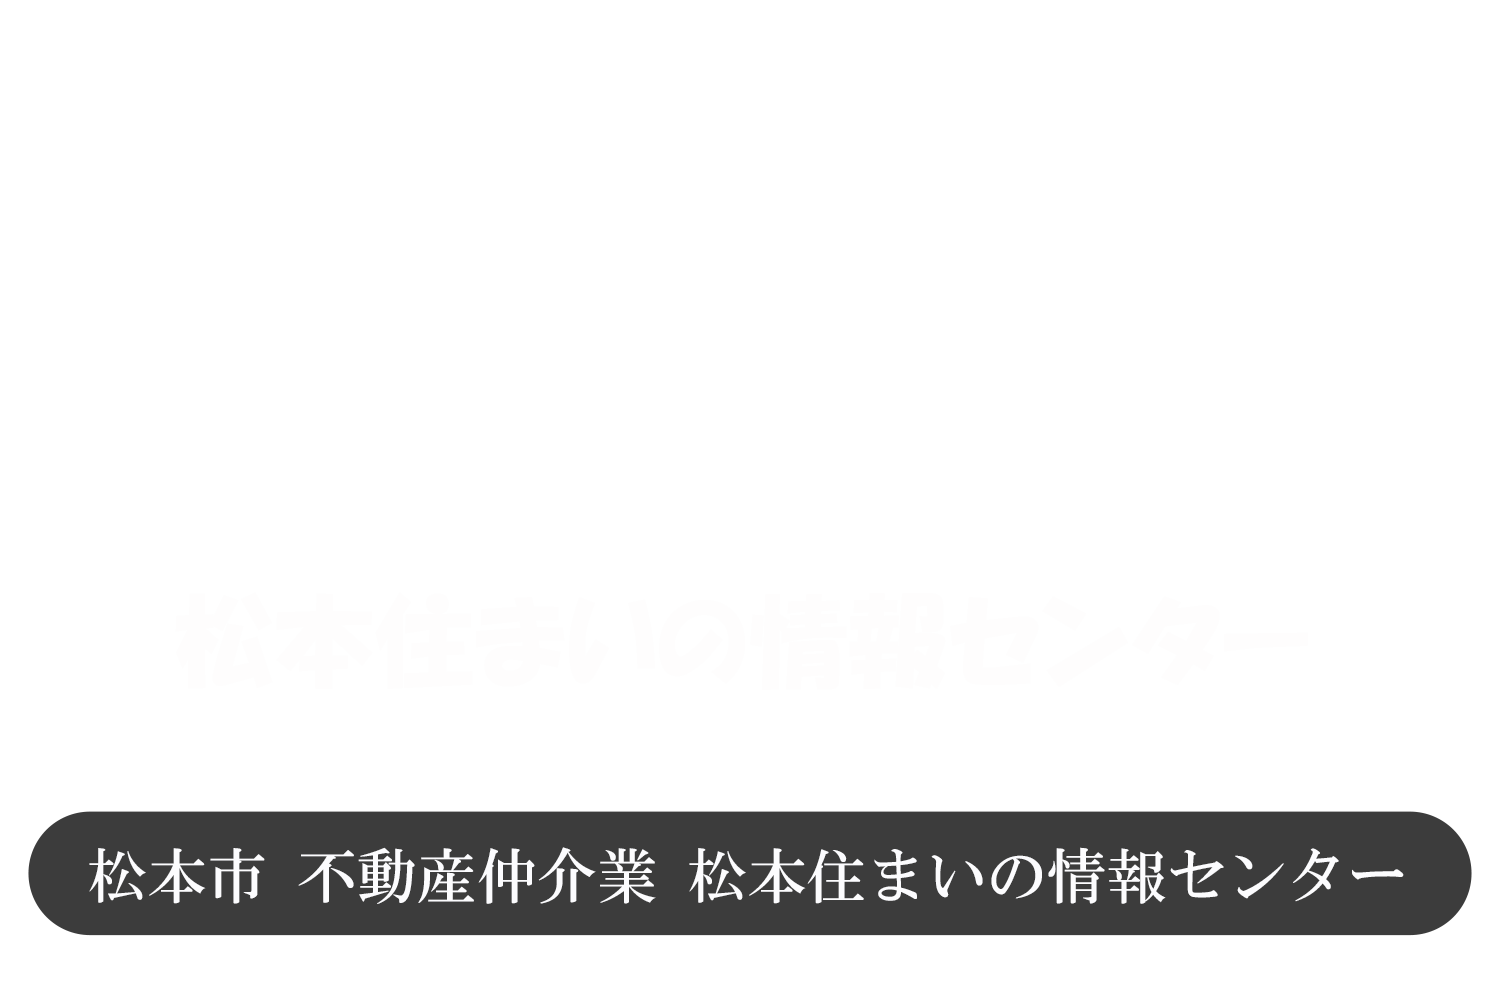 松本市 不動産 中古住宅 土地 マンション購入や相続相談、問い合わせは松本住まいの情報センター